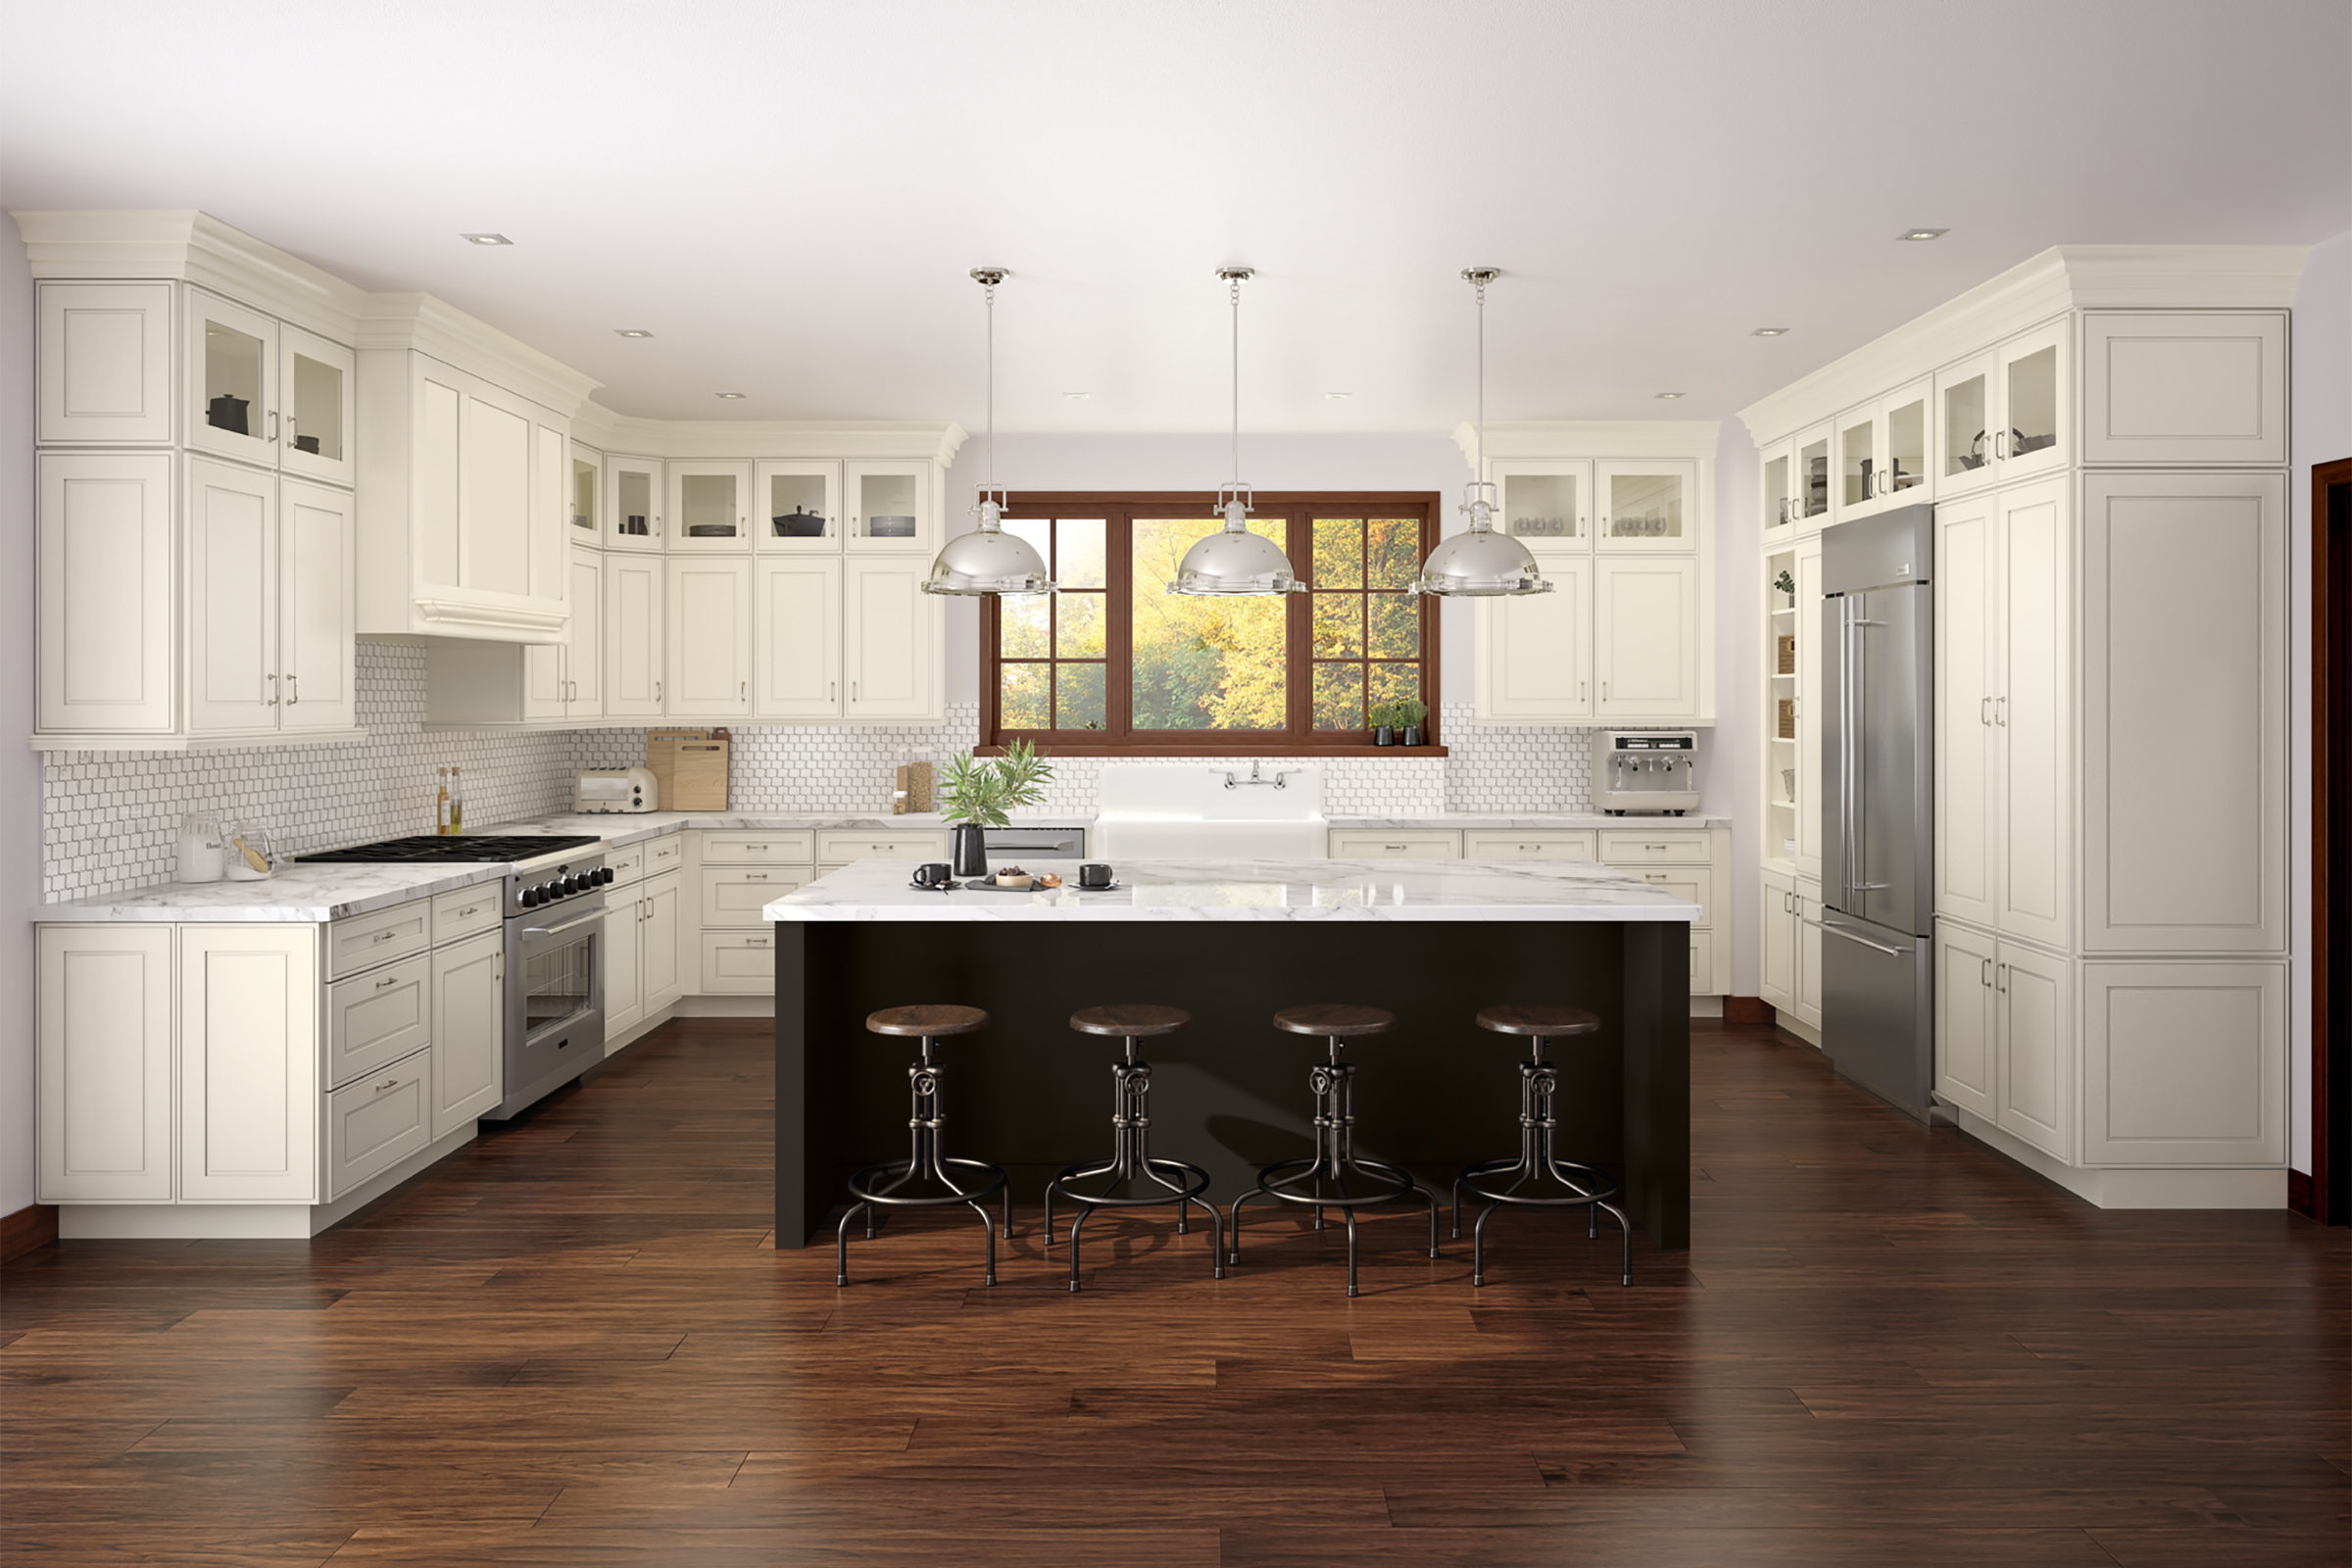 KraftMaid Warm White kitchen cabinets with center island